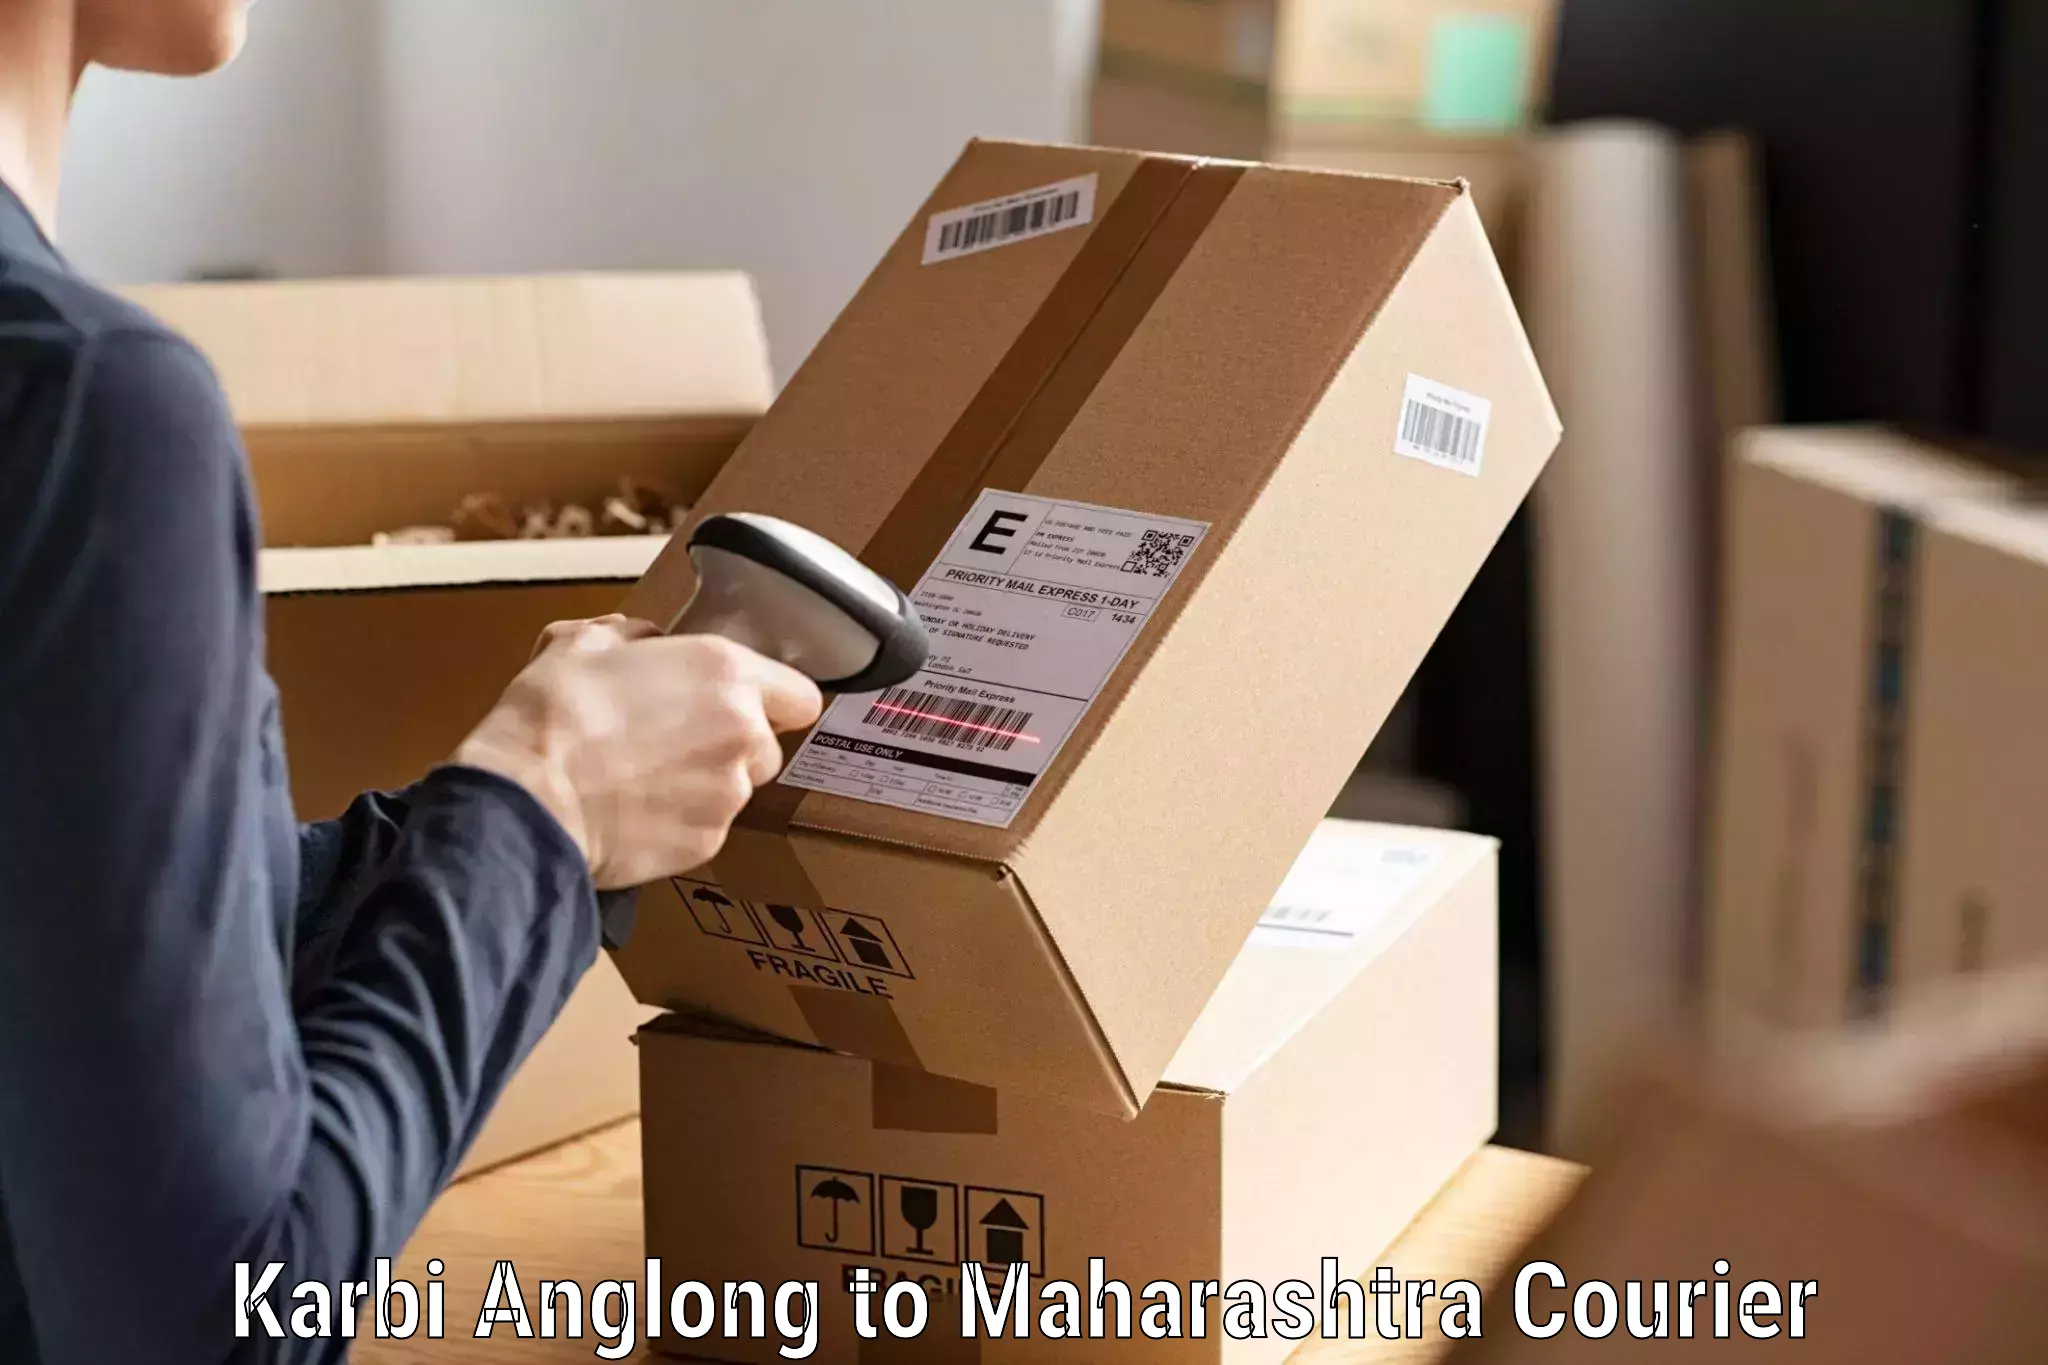 Automated shipping Karbi Anglong to Gangapur Aurangabad